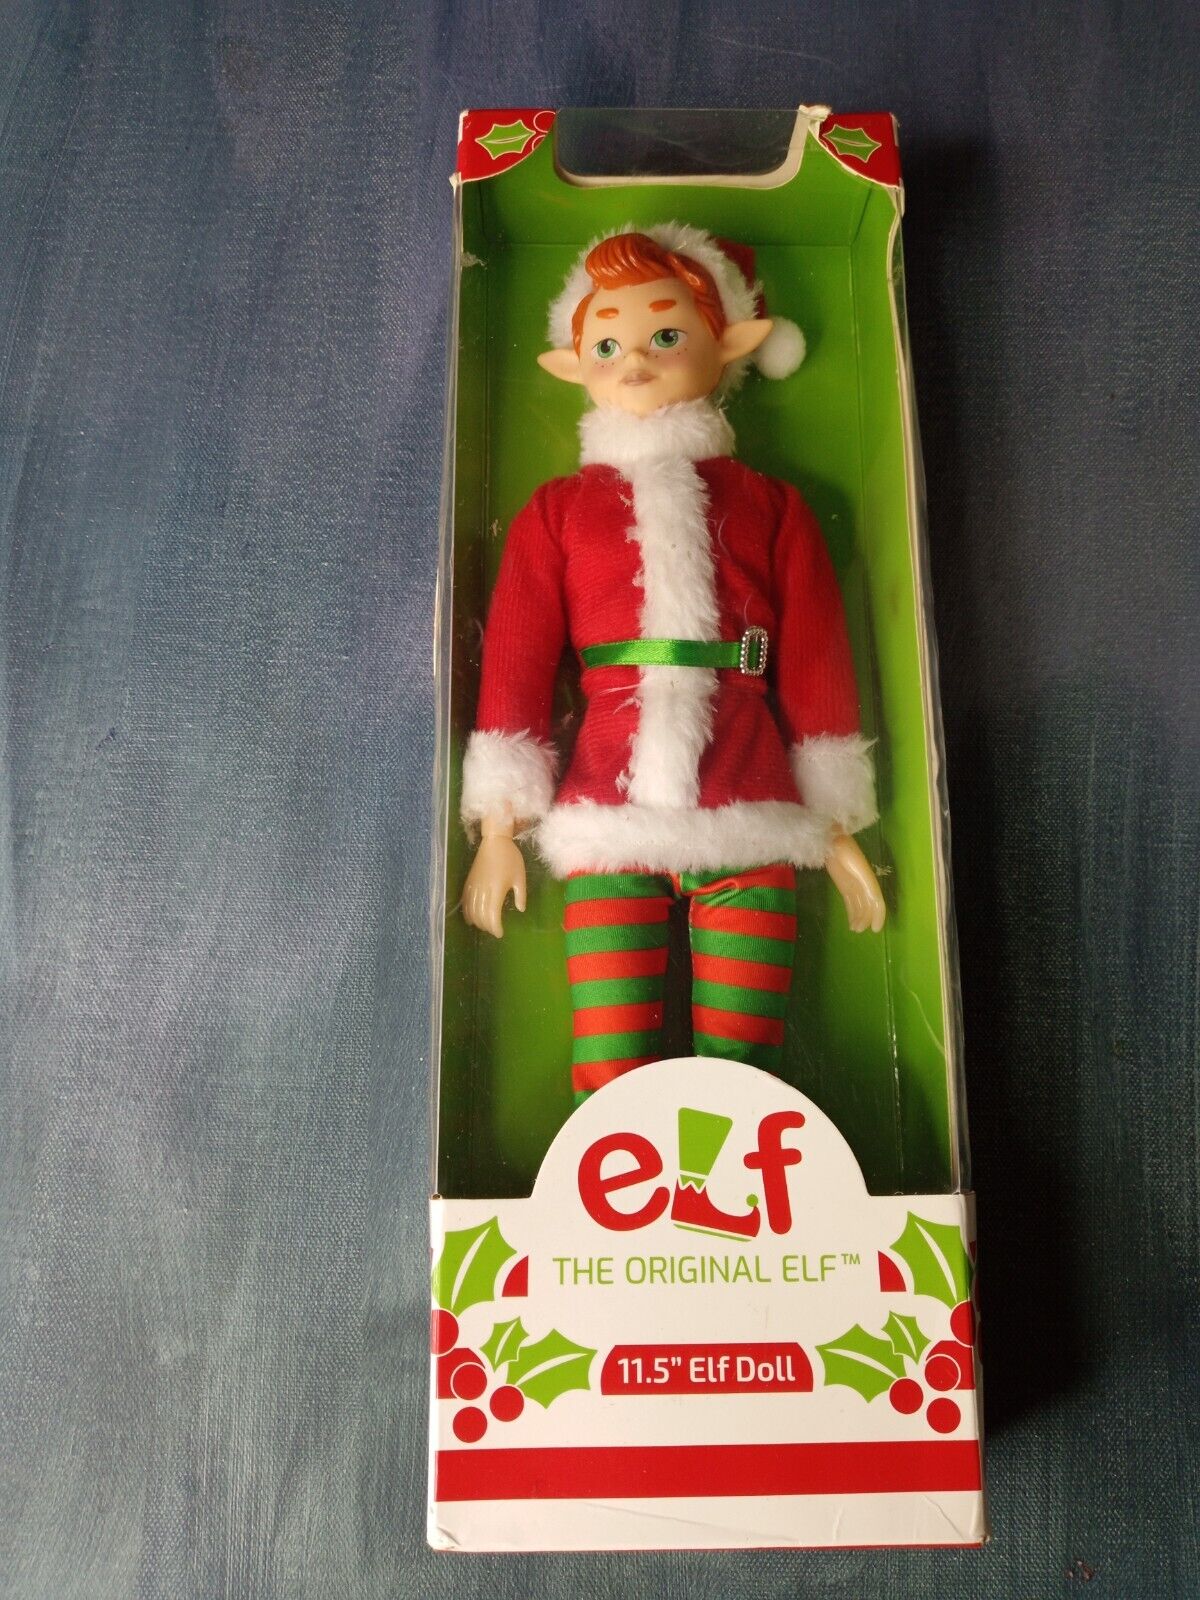 Original Elf 11.5 Inch Elf Doll